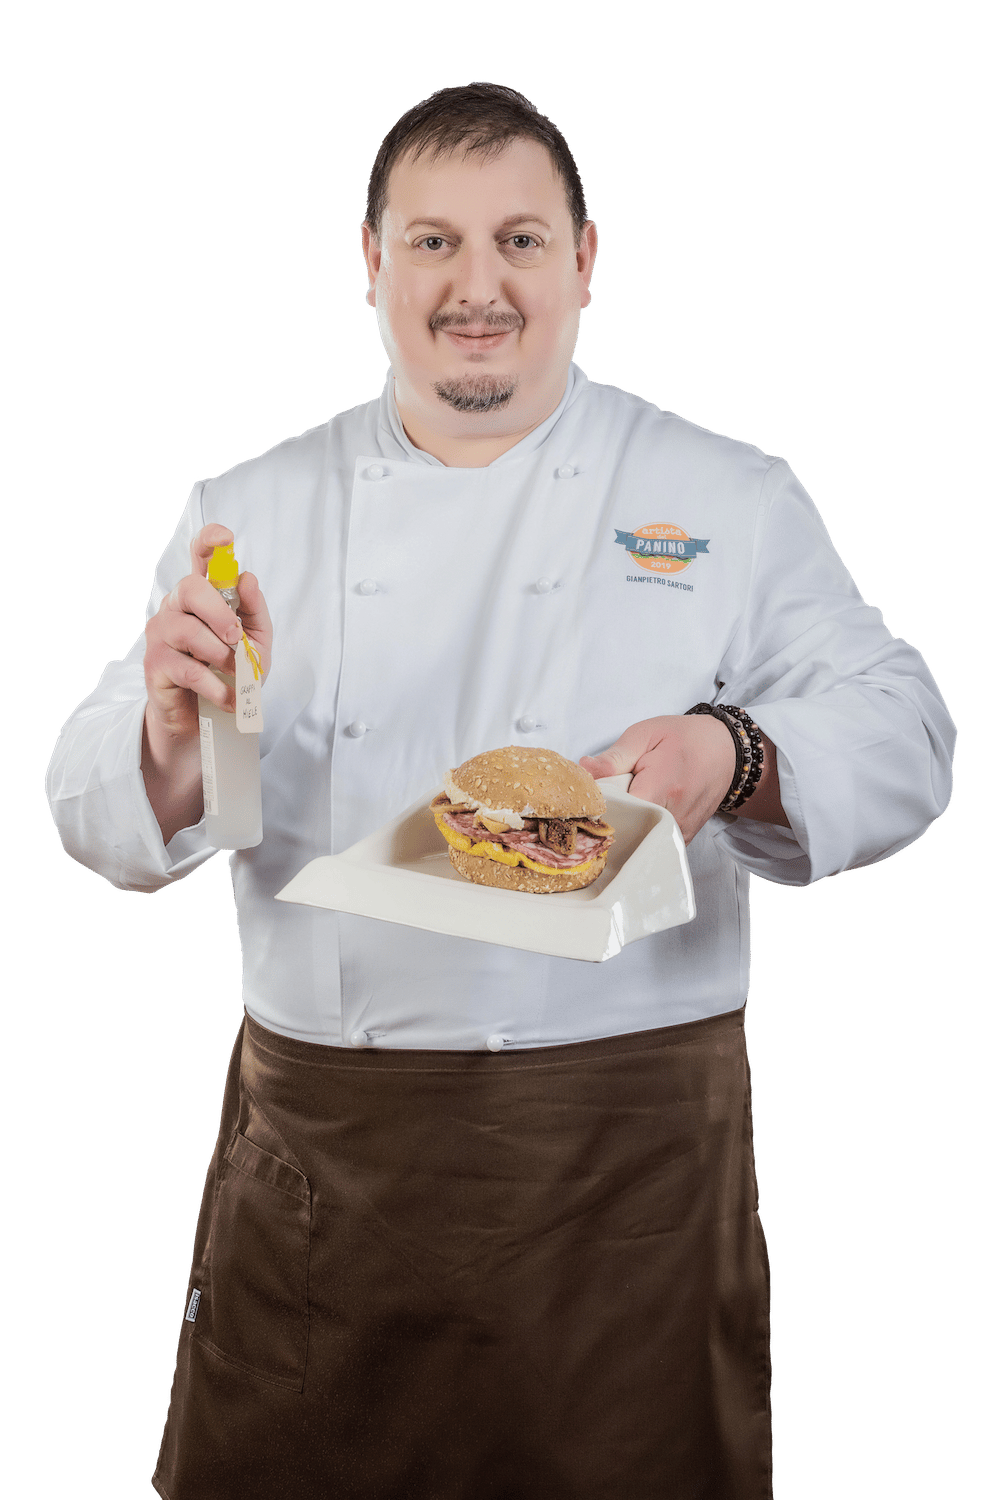 Gianpietro Sartori - Vincitore Artista del Panino edizione 2018 con il panino “Tu si che Vale”